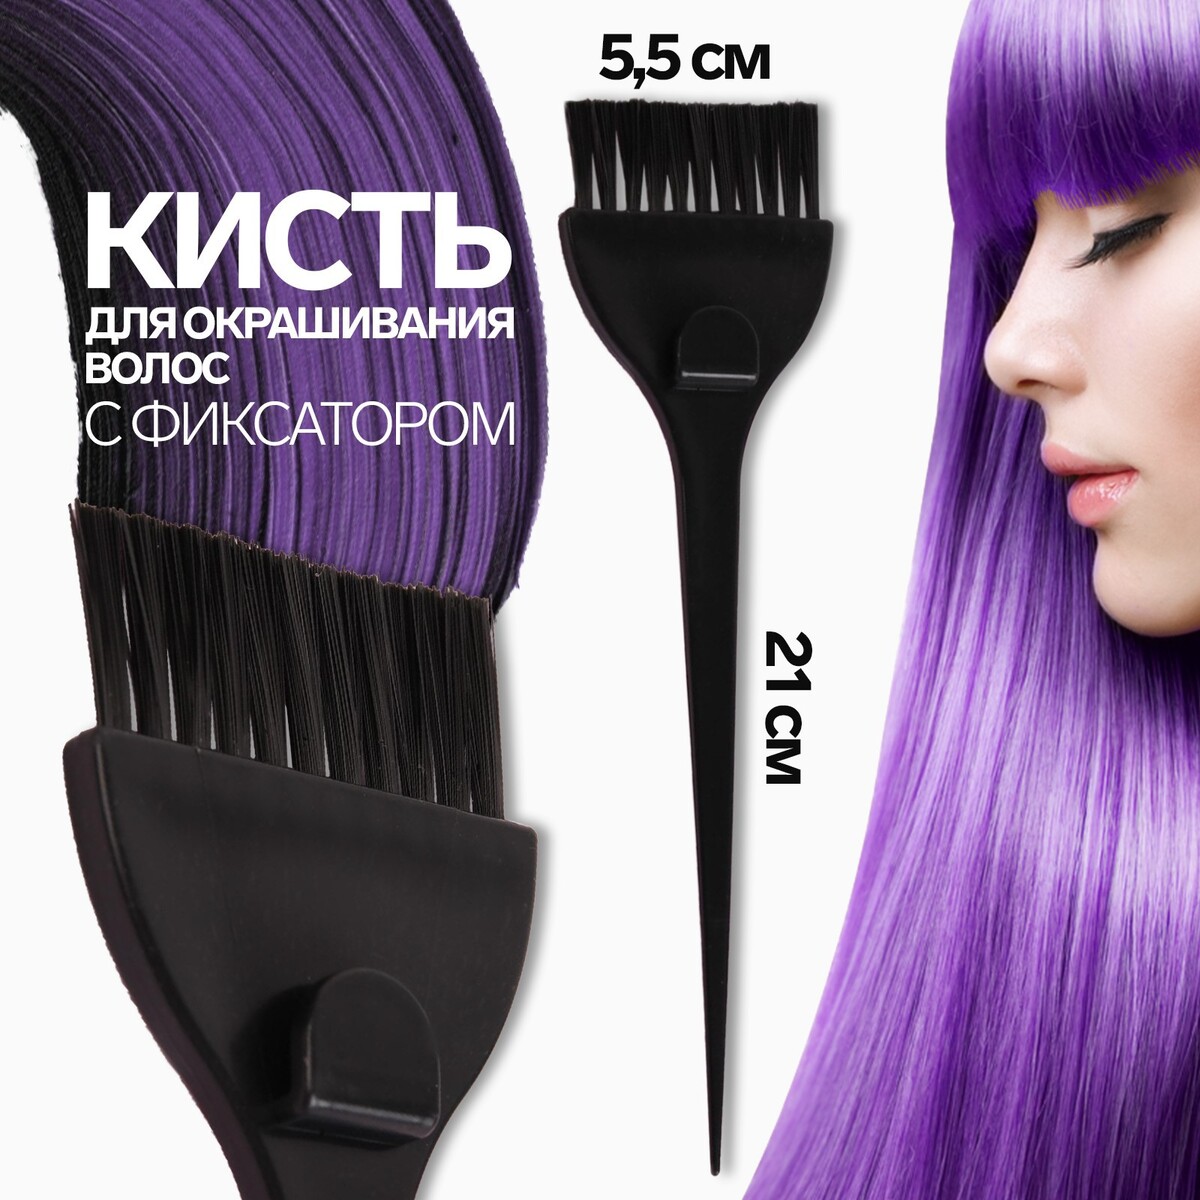 Кисть для окрашивания волос с фиксатором, 21 х 5,5 см, цвет черный